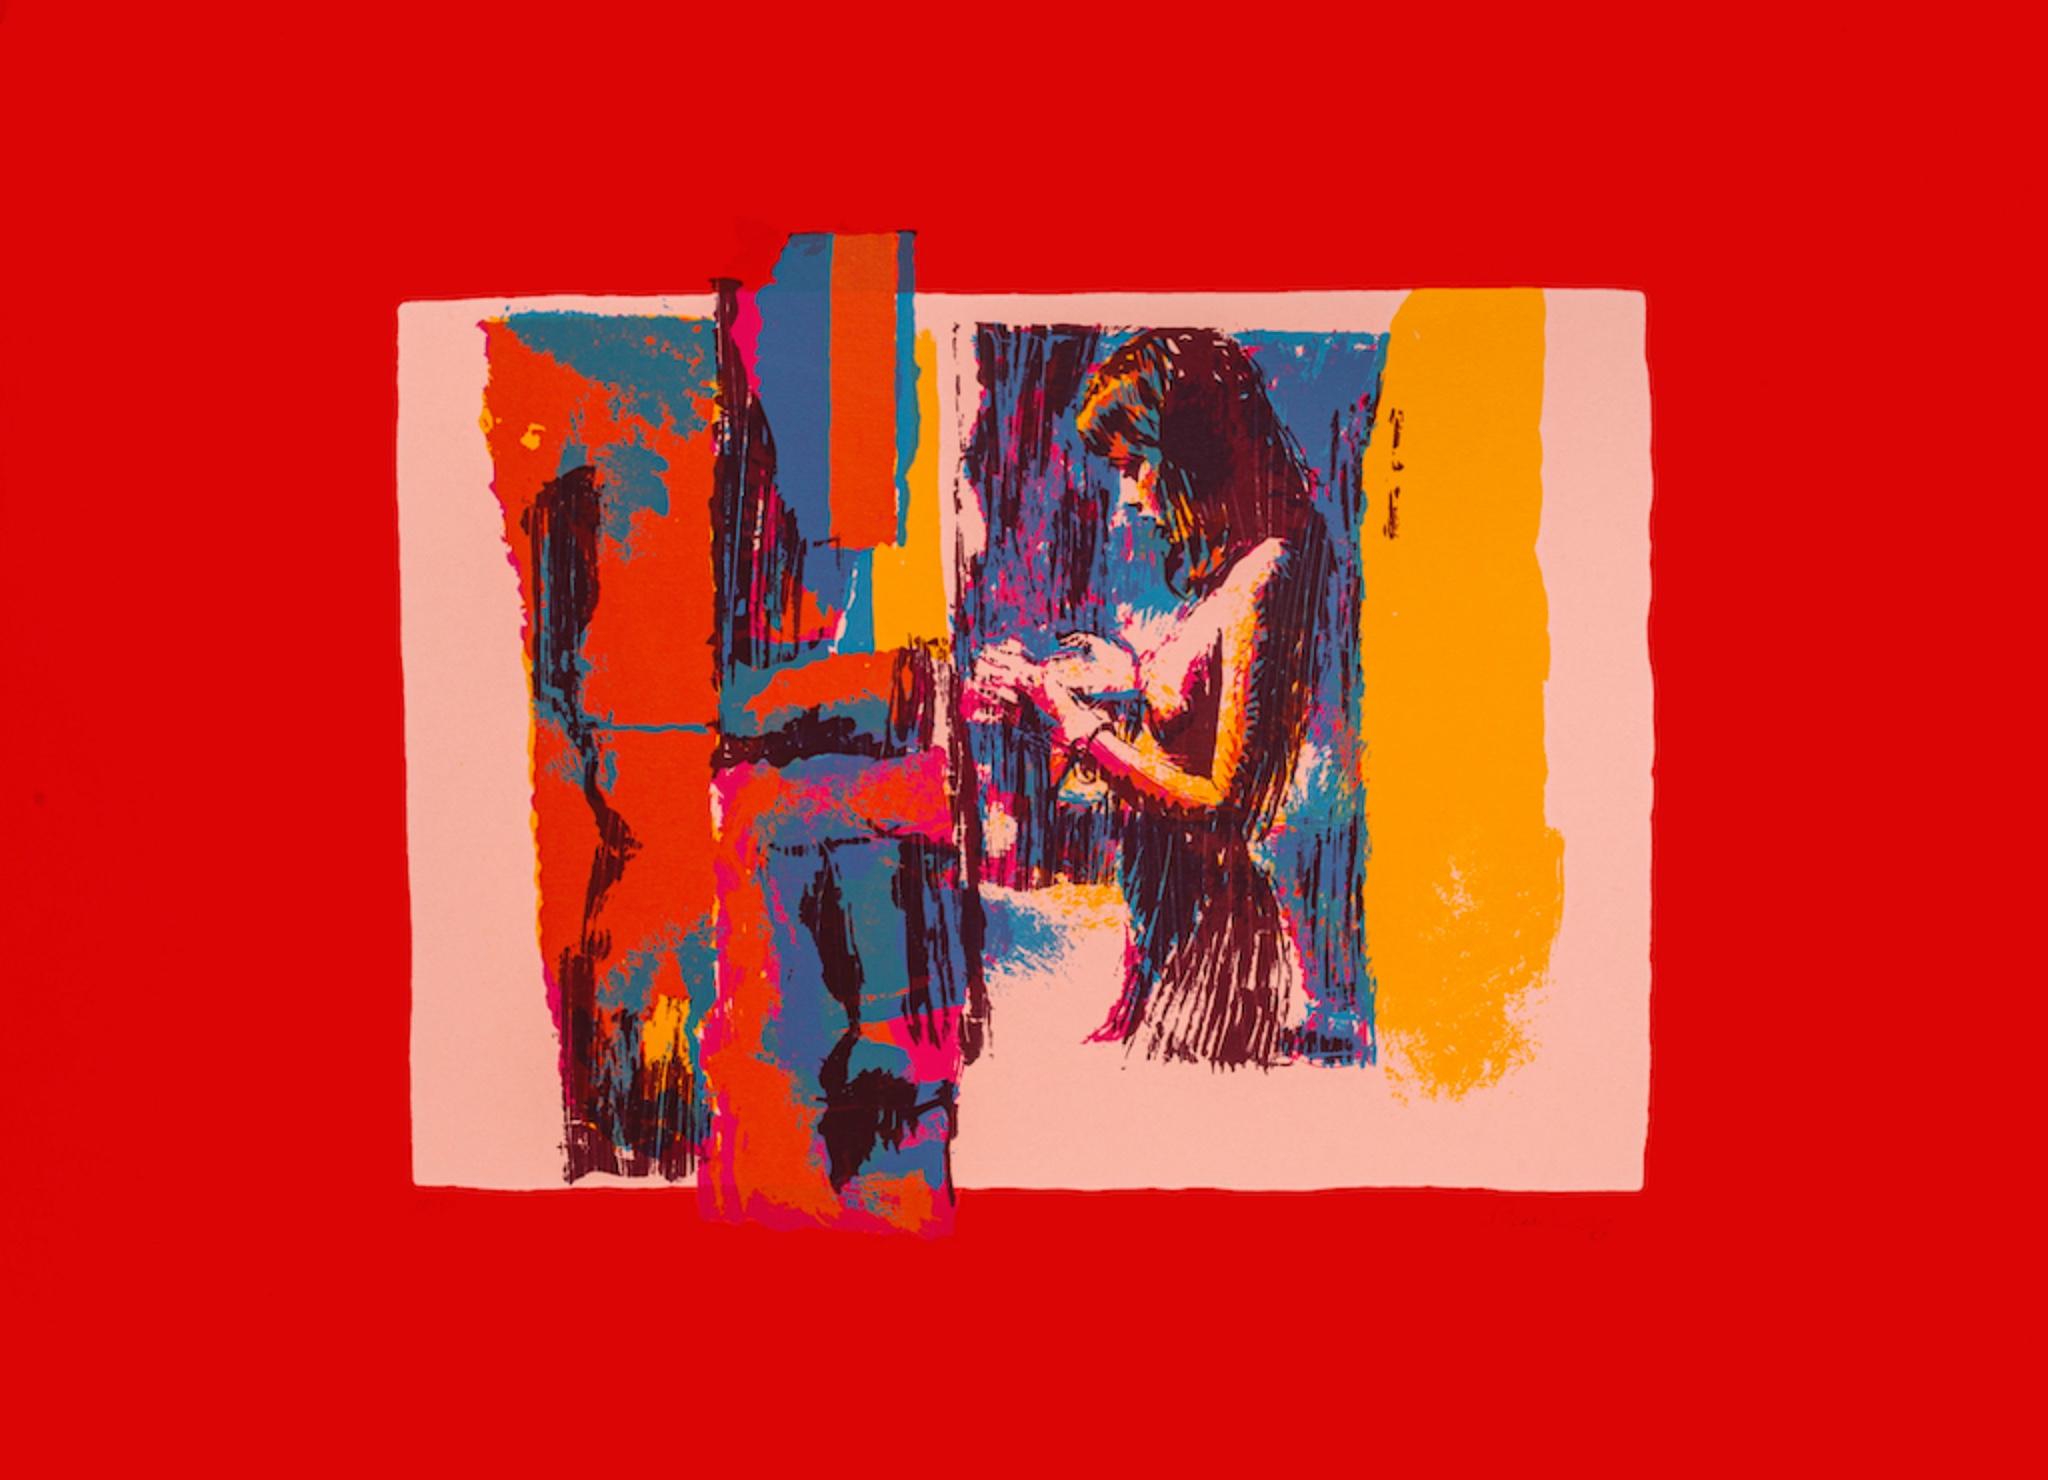 Woman i est une sérigraphie originale réalisée par Nicola Simbari en 1976.

Signé à la main en bas à droite.

Édition numérotée 11/90.

L'œuvre représente un nu féminin de profil avec une composition abstraite multicolore. Il y a des cases colorées,